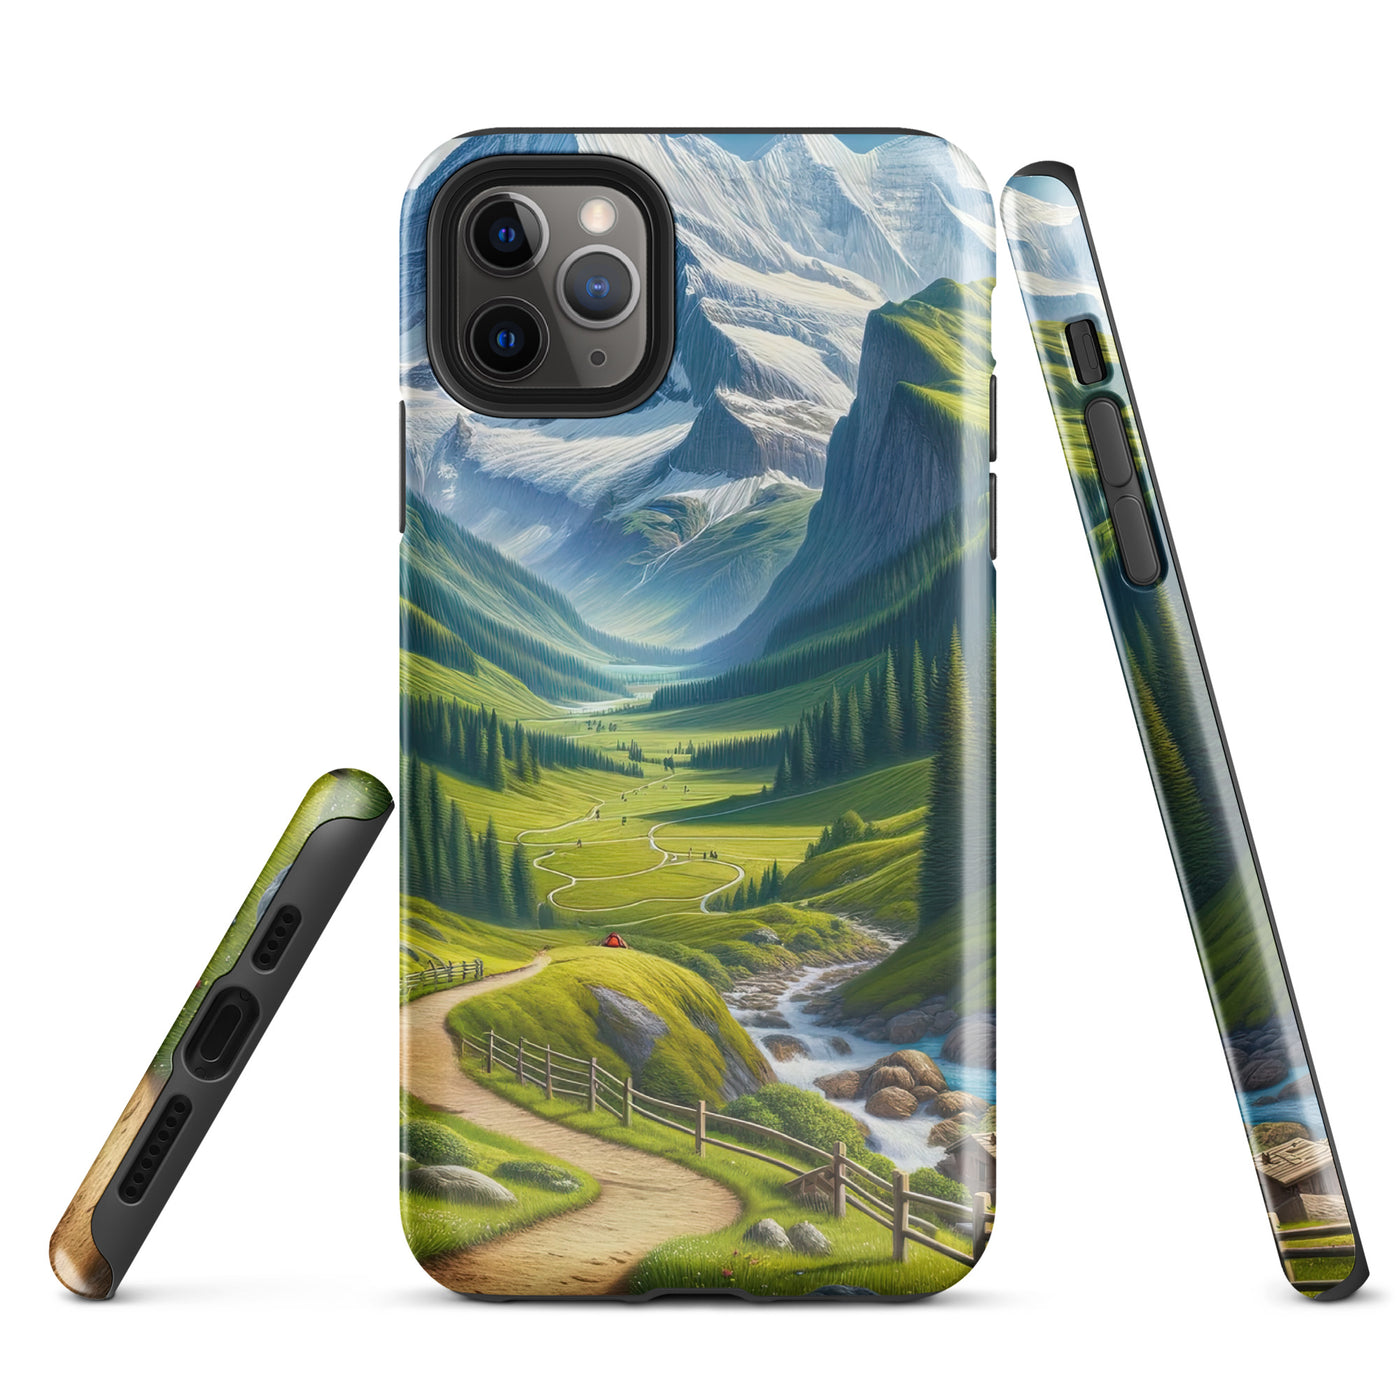 Wanderer in den Bergen und Wald: Digitale Malerei mit grünen kurvenreichen Pfaden - iPhone Schutzhülle (robust) wandern xxx yyy zzz iPhone 11 Pro Max